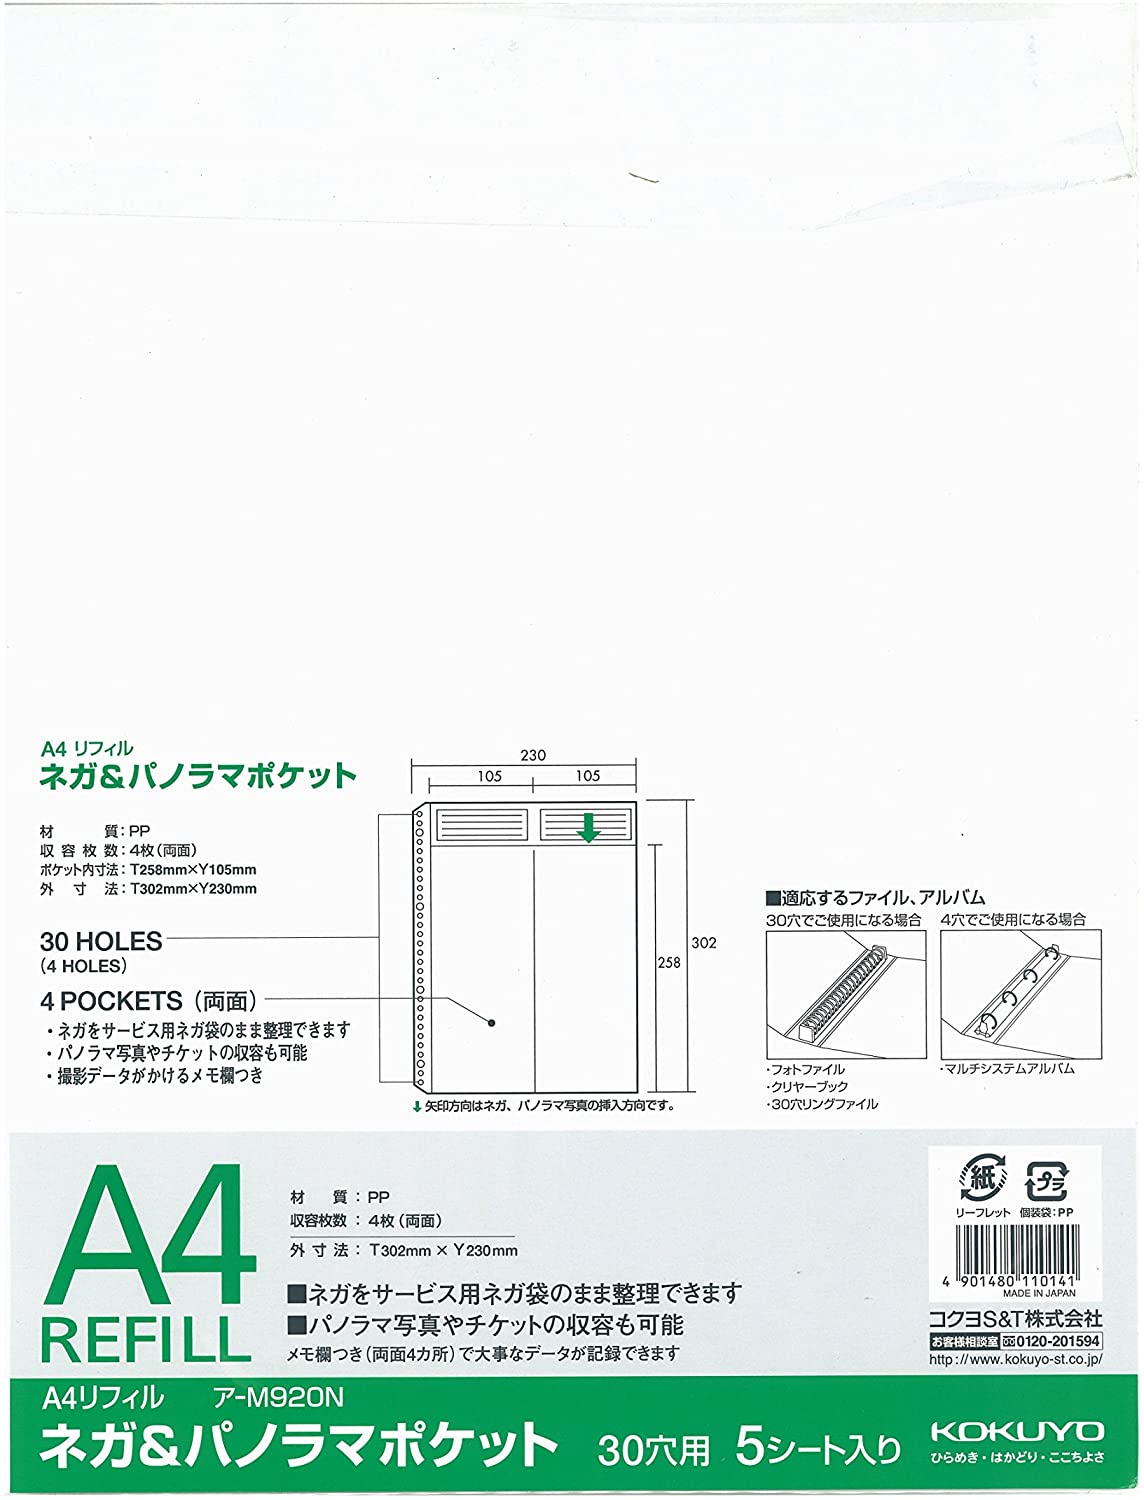 コクヨ kokuyo 51084851 フォトファイルa4替台紙フィルム用ネガ パノラマポケット用 アーm920n